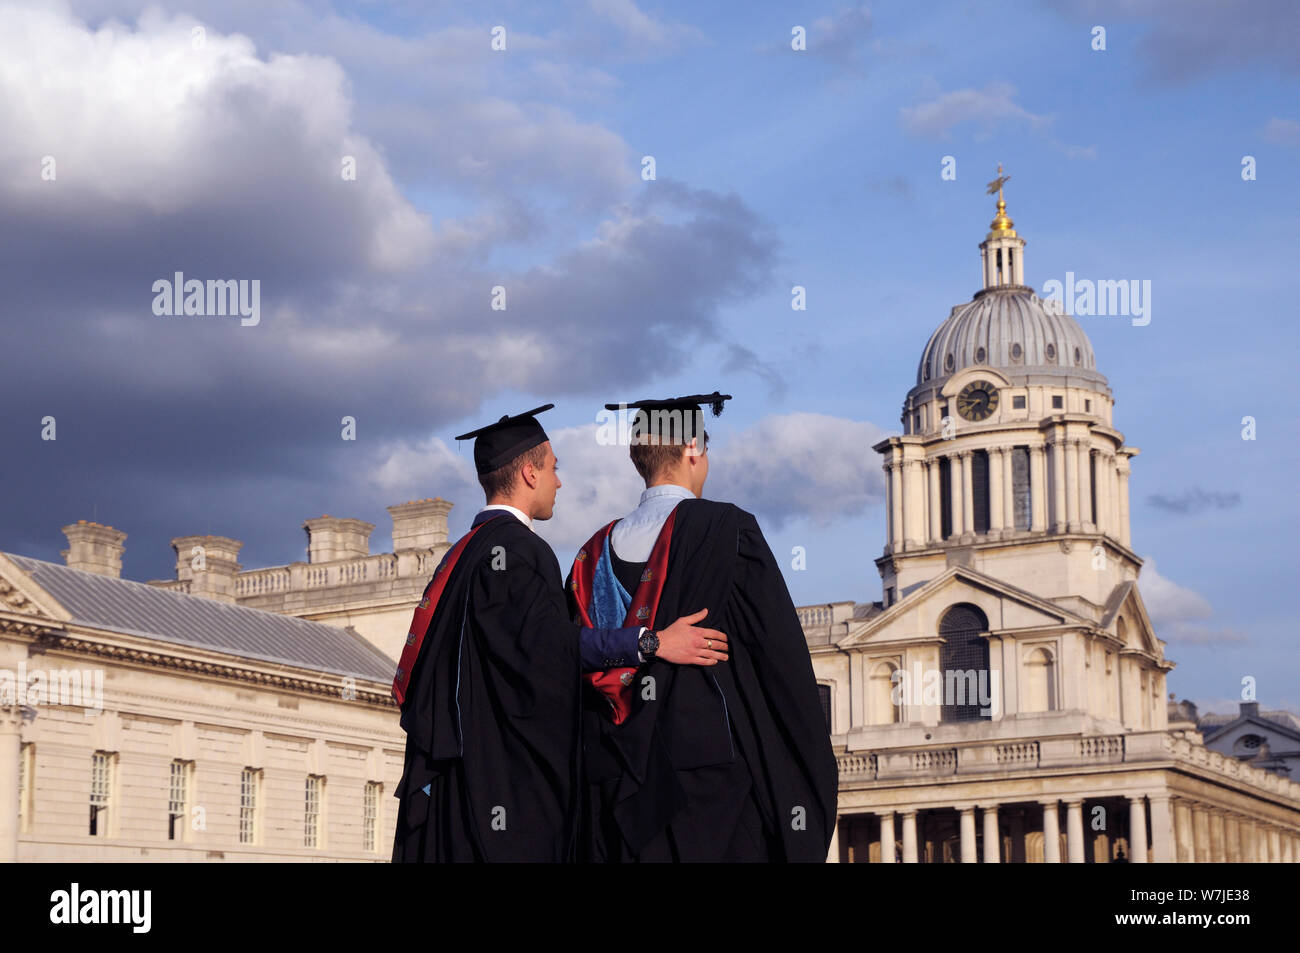 Männliche Studenten der University of Greenwich posieren für Bilder am Abschlusstag auf dem Gelände des Old Royal Naval College, London, England, Großbritannien Stockfoto